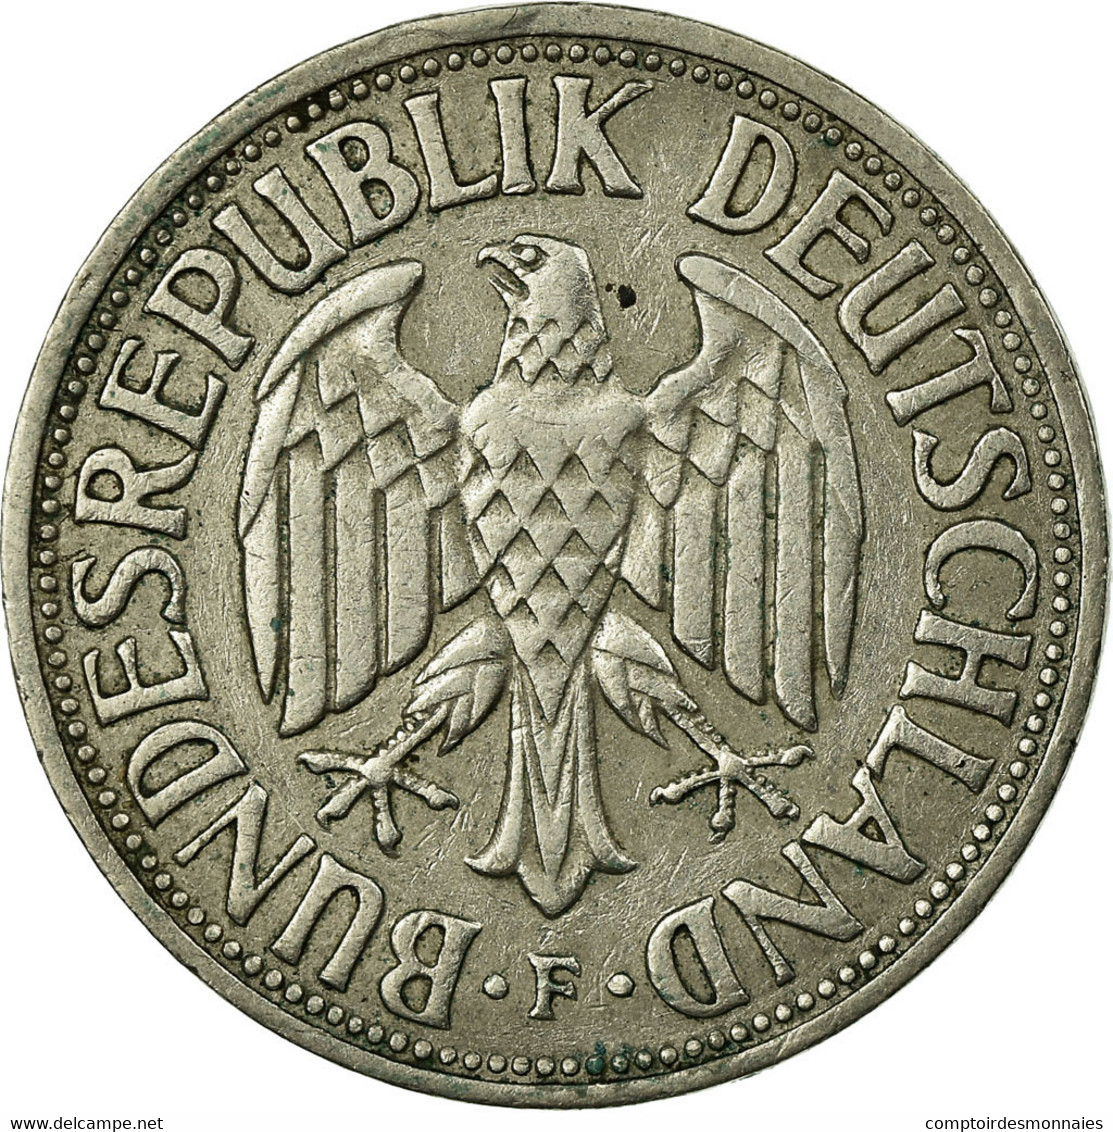 Monnaie, République Fédérale Allemande, Mark, 1950, Stuttgart, TTB - 1 Marco